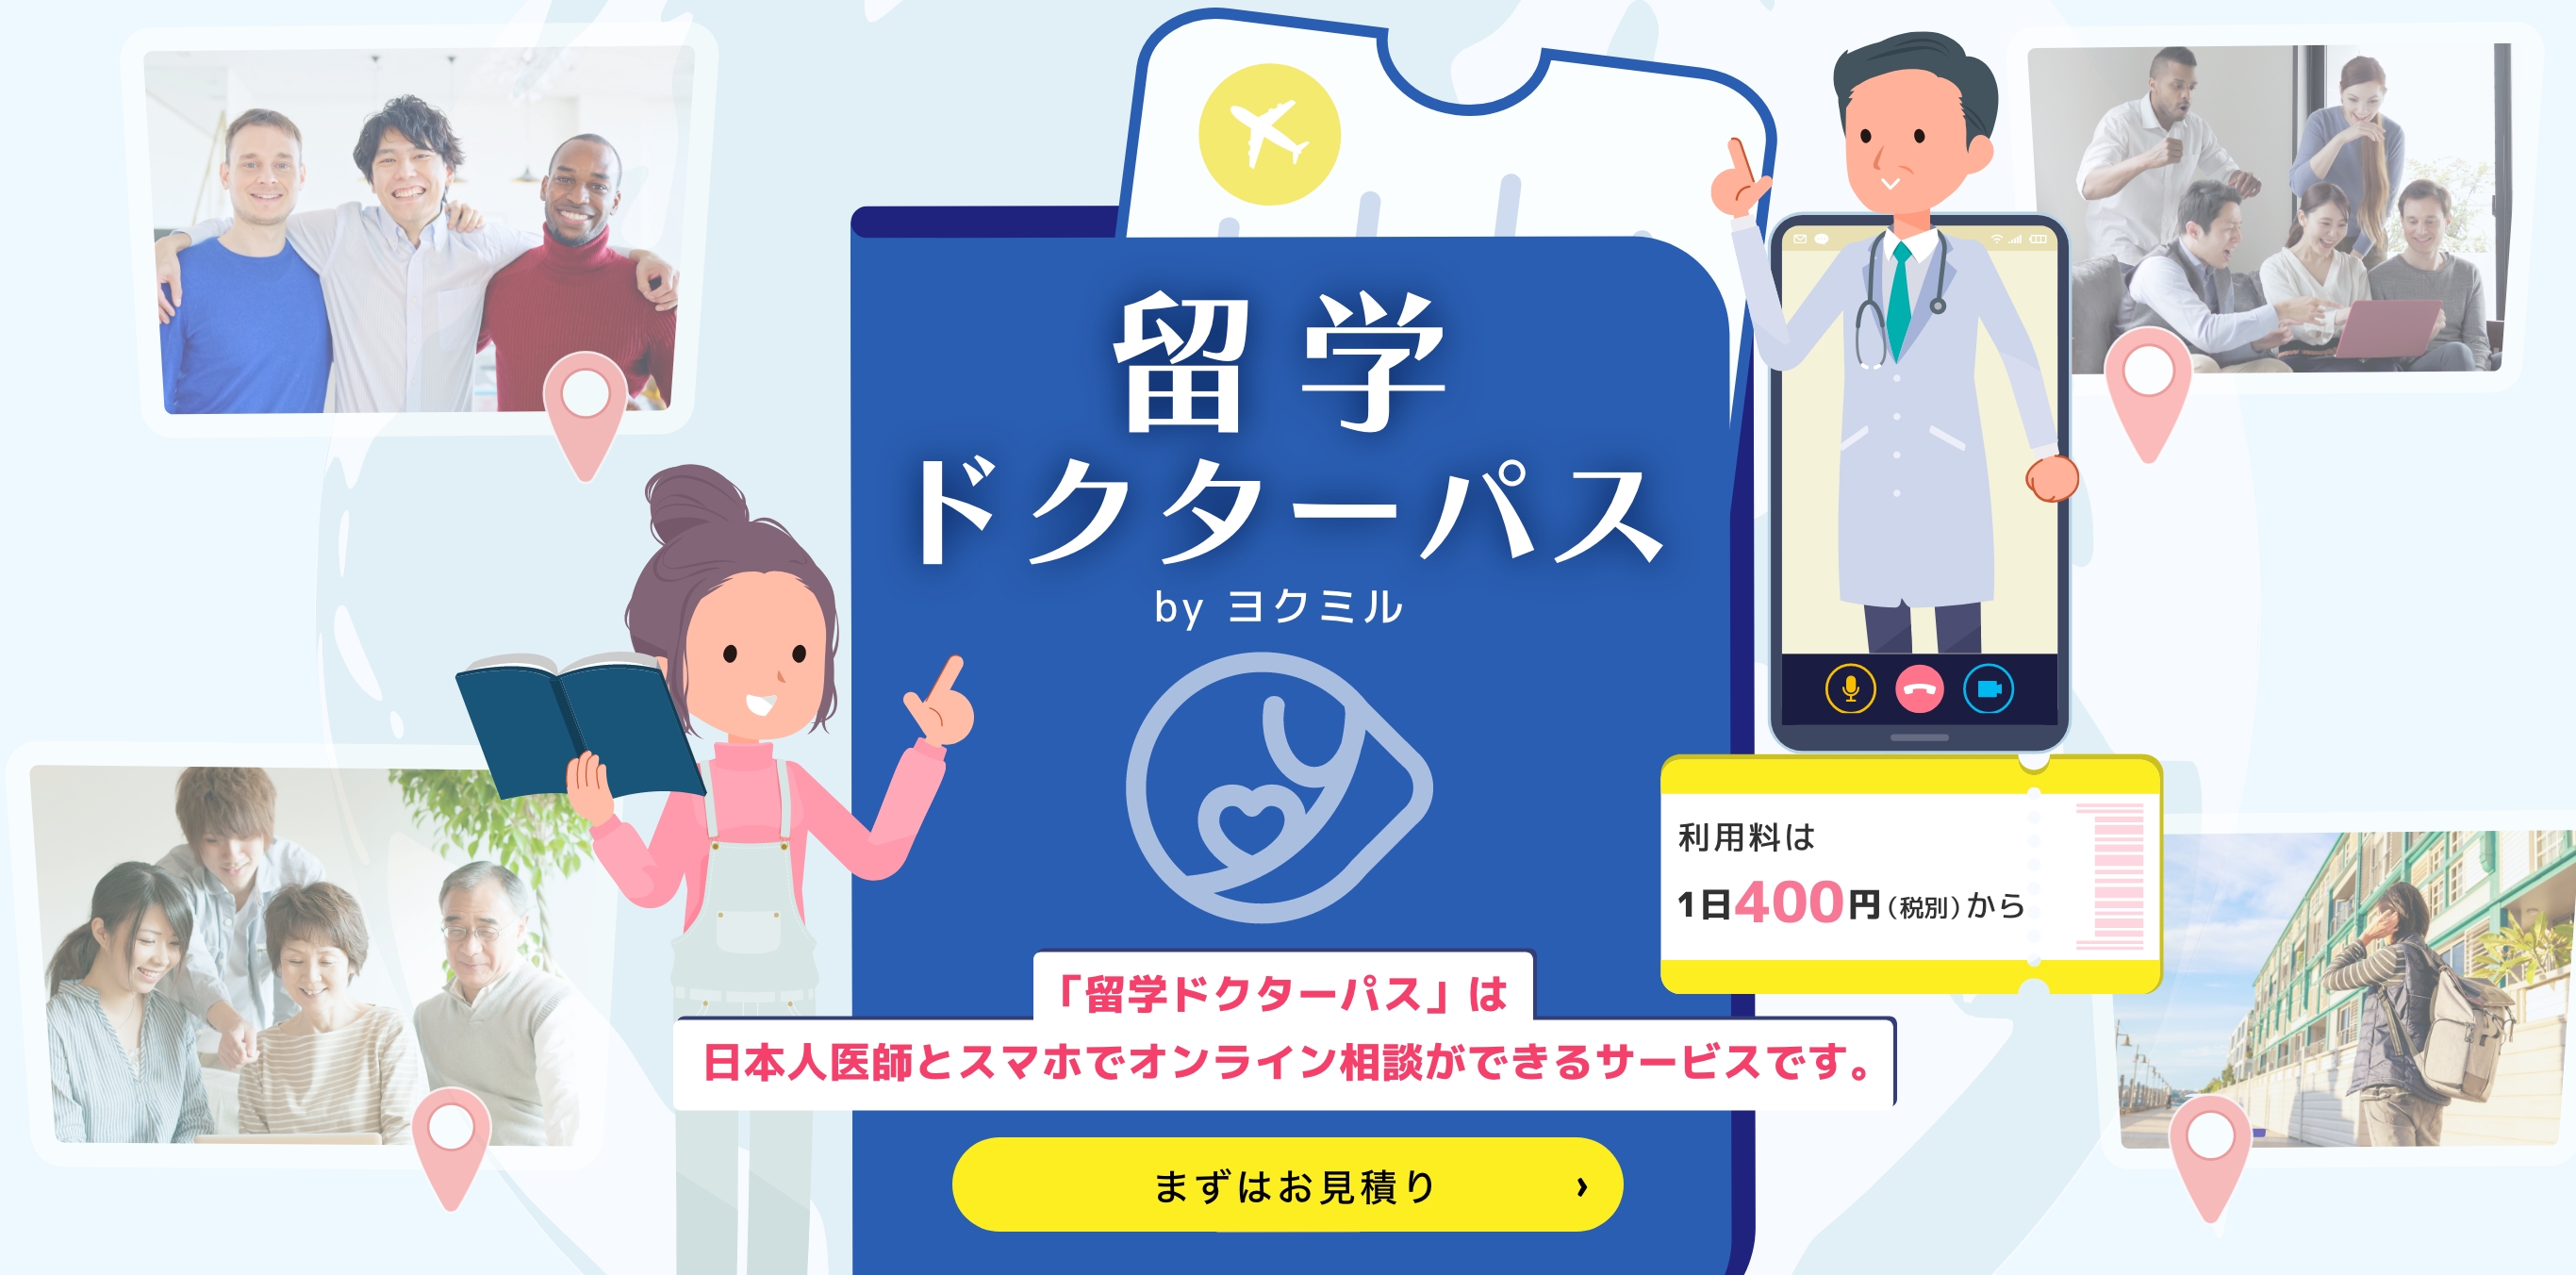 「留学ドクターパス」は日本人医師とスマホでオンライン相談ができるサービスです。